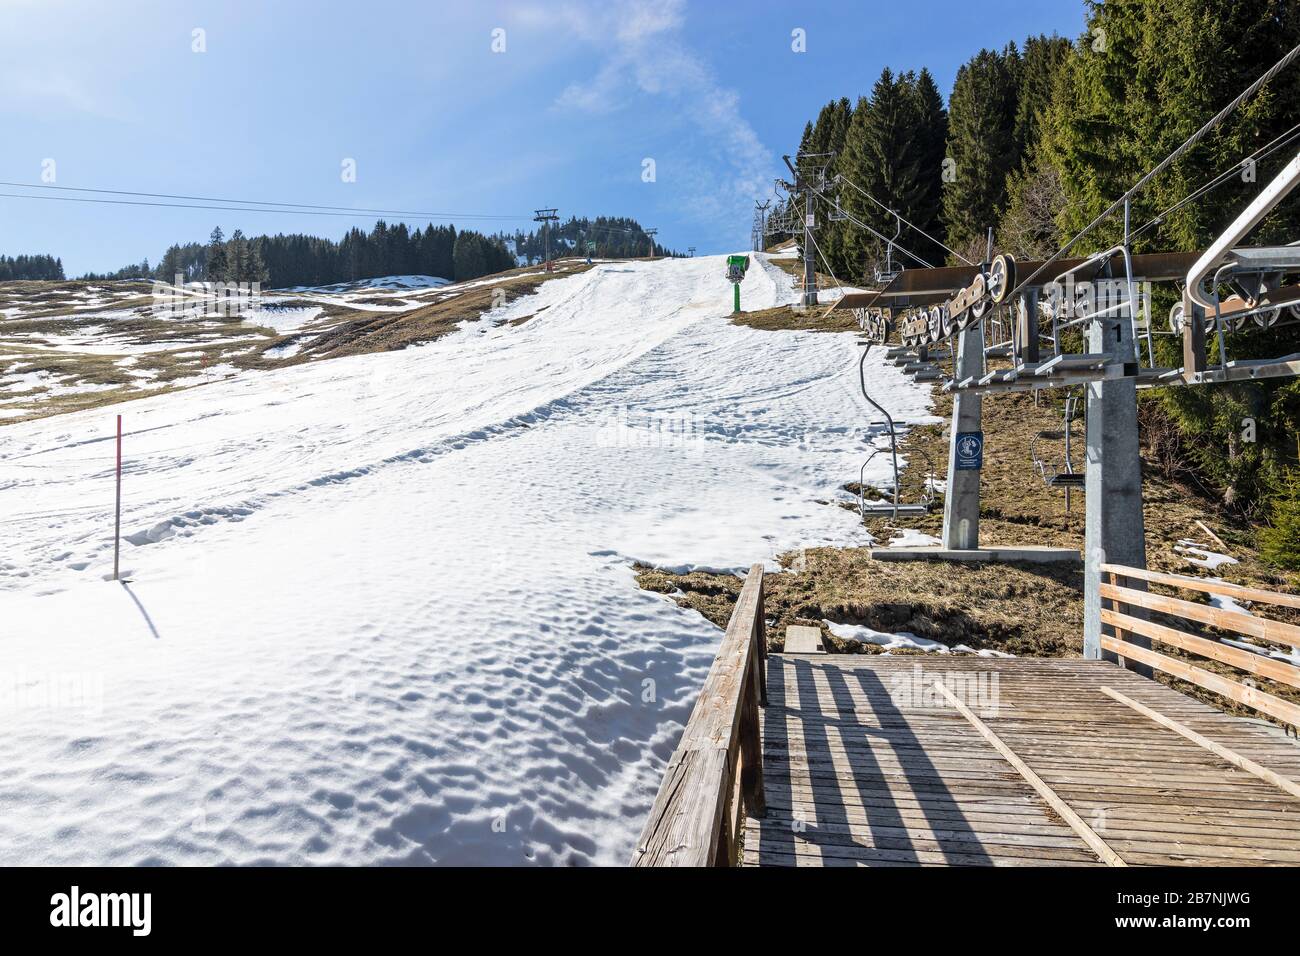 Domaine skiable fermé en raison de l'épidémie de virus de Corona. Téléphérique abandonné, télésiège et piste de ski. Hörnerbahn Bolsterlang, Bavière, Allemagne Banque D'Images